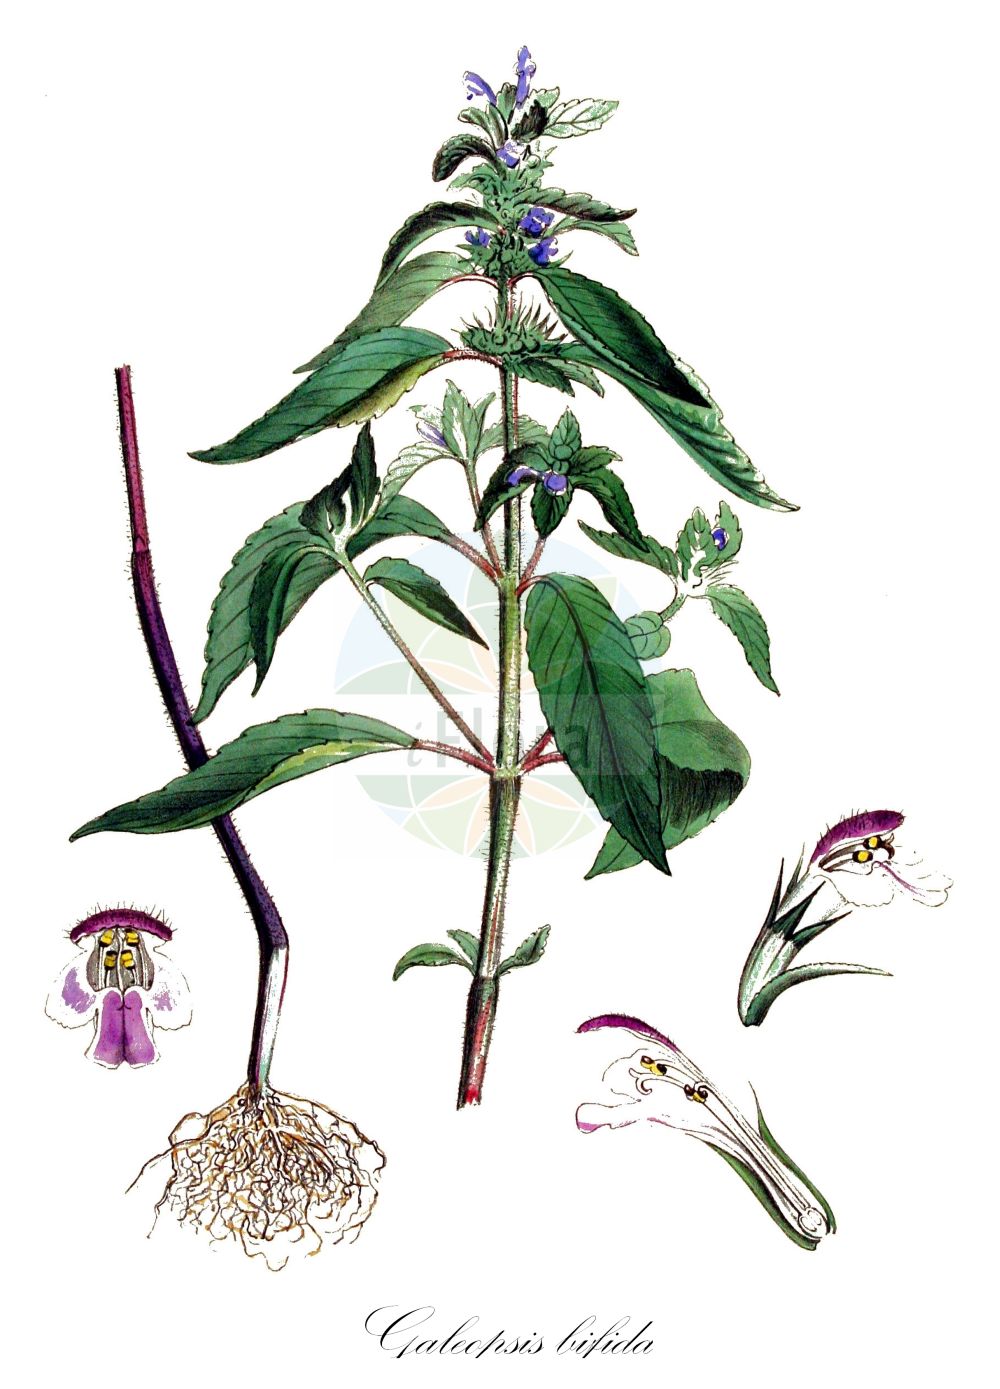 Historische Abbildung von Galeopsis bifida (Zweispaltiger Hohlzahn - Bifid Hemp-nettle). Das Bild zeigt Blatt, Bluete, Frucht und Same. ---- Historical Drawing of Galeopsis bifida (Zweispaltiger Hohlzahn - Bifid Hemp-nettle). The image is showing leaf, flower, fruit and seed.(Galeopsis bifida,Zweispaltiger Hohlzahn,Bifid Hemp-nettle,Galeopsis bifida,Galeopsis pallens,Galeopsis pernkofferi,Galeopsis tetrahit var. bifida,Zweispaltiger Hohlzahn,Kleinbluetiger Hohlzahn,Zweizipfeliger Hohlzahn,Bifid Hemp-nettle,Splitlip Hempnettle,Galeopsis,Hohlzahn,Hempnettle,Lamiaceae,Lippenblütengewächse,Nettle family,Blatt,Bluete,Frucht,Same,leaf,flower,fruit,seed,Kops (1800-1934))